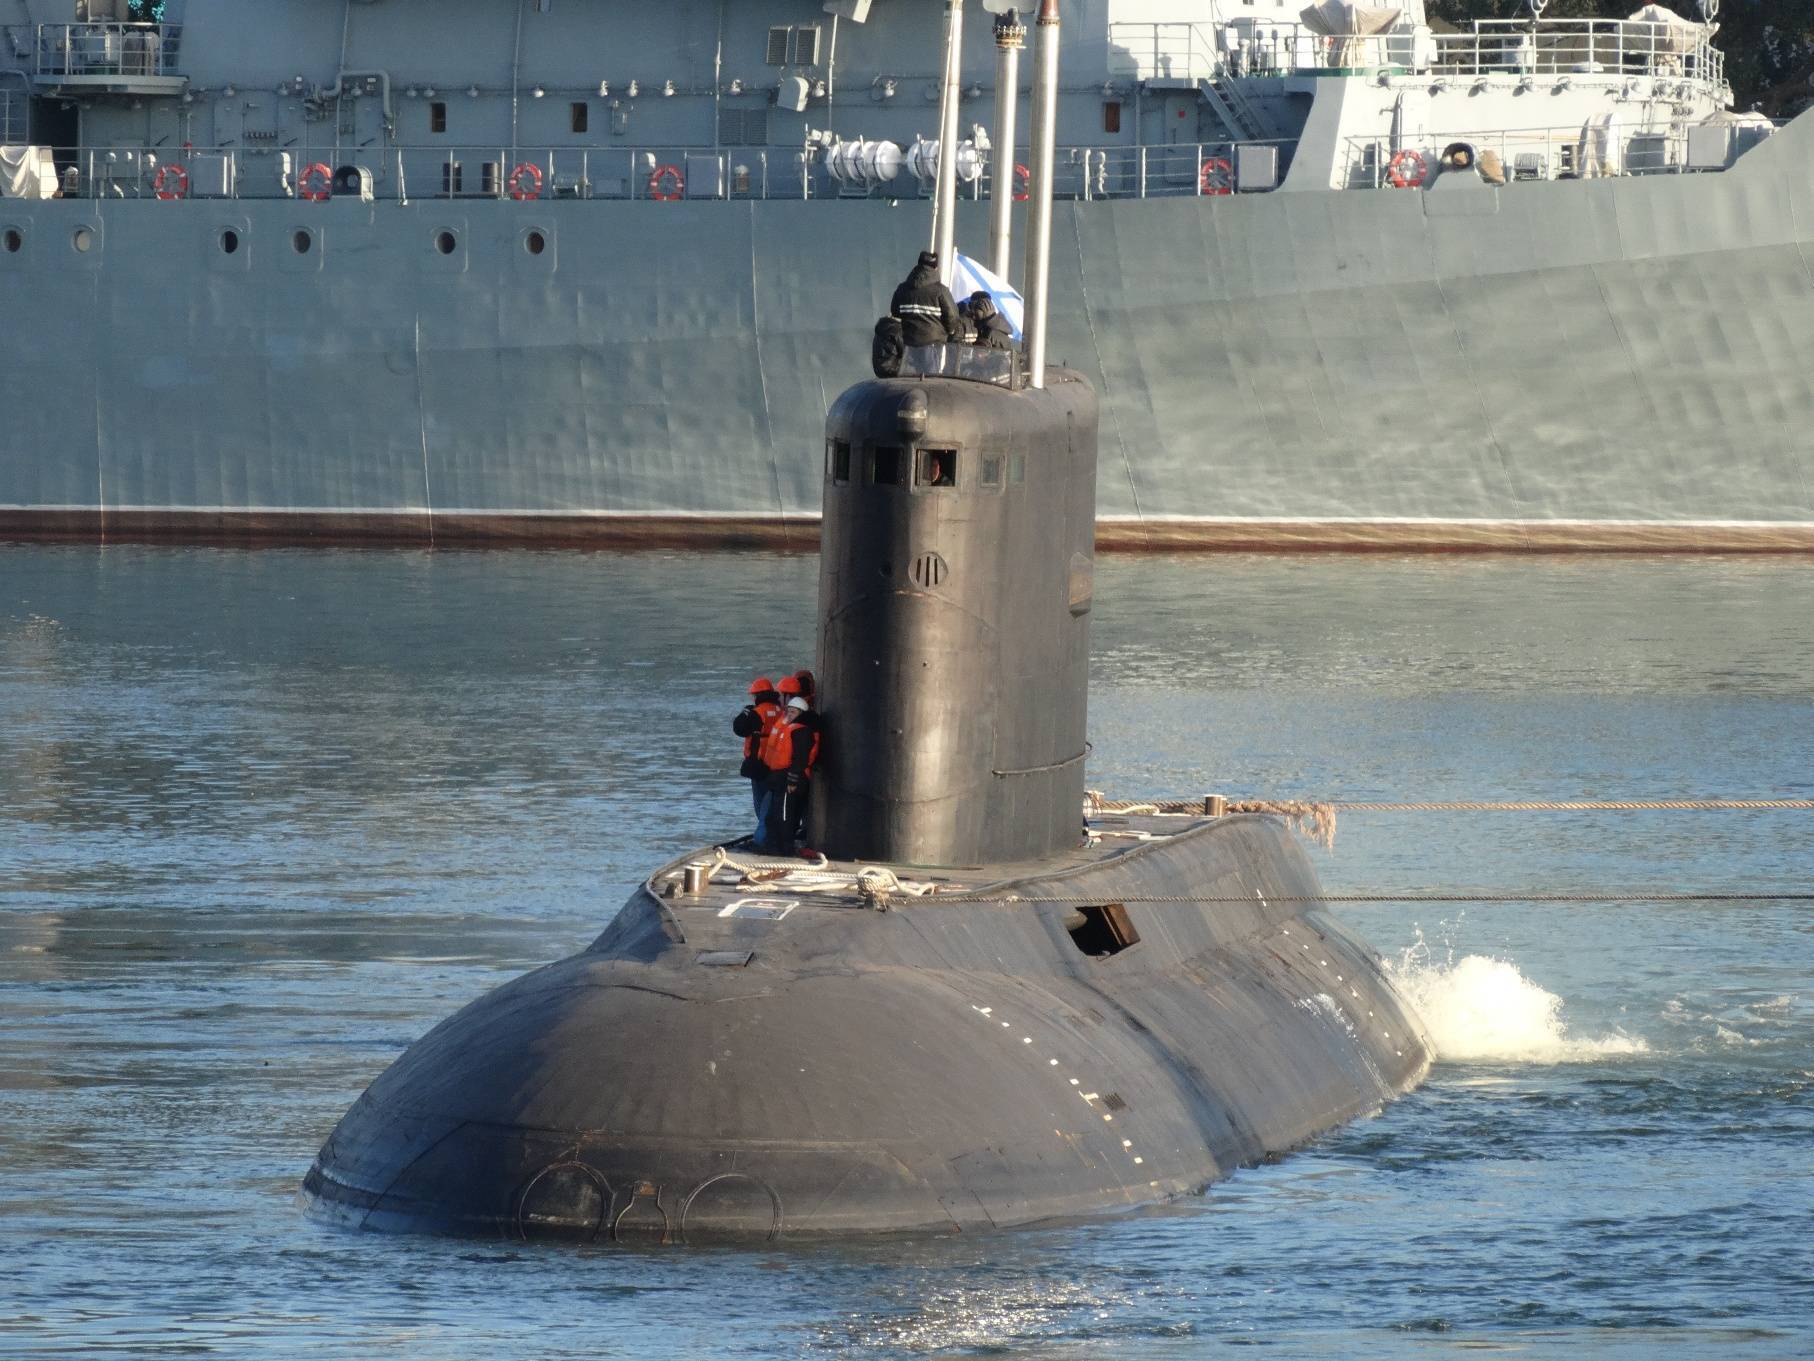 Список подводных лодок проектов 877 и 636